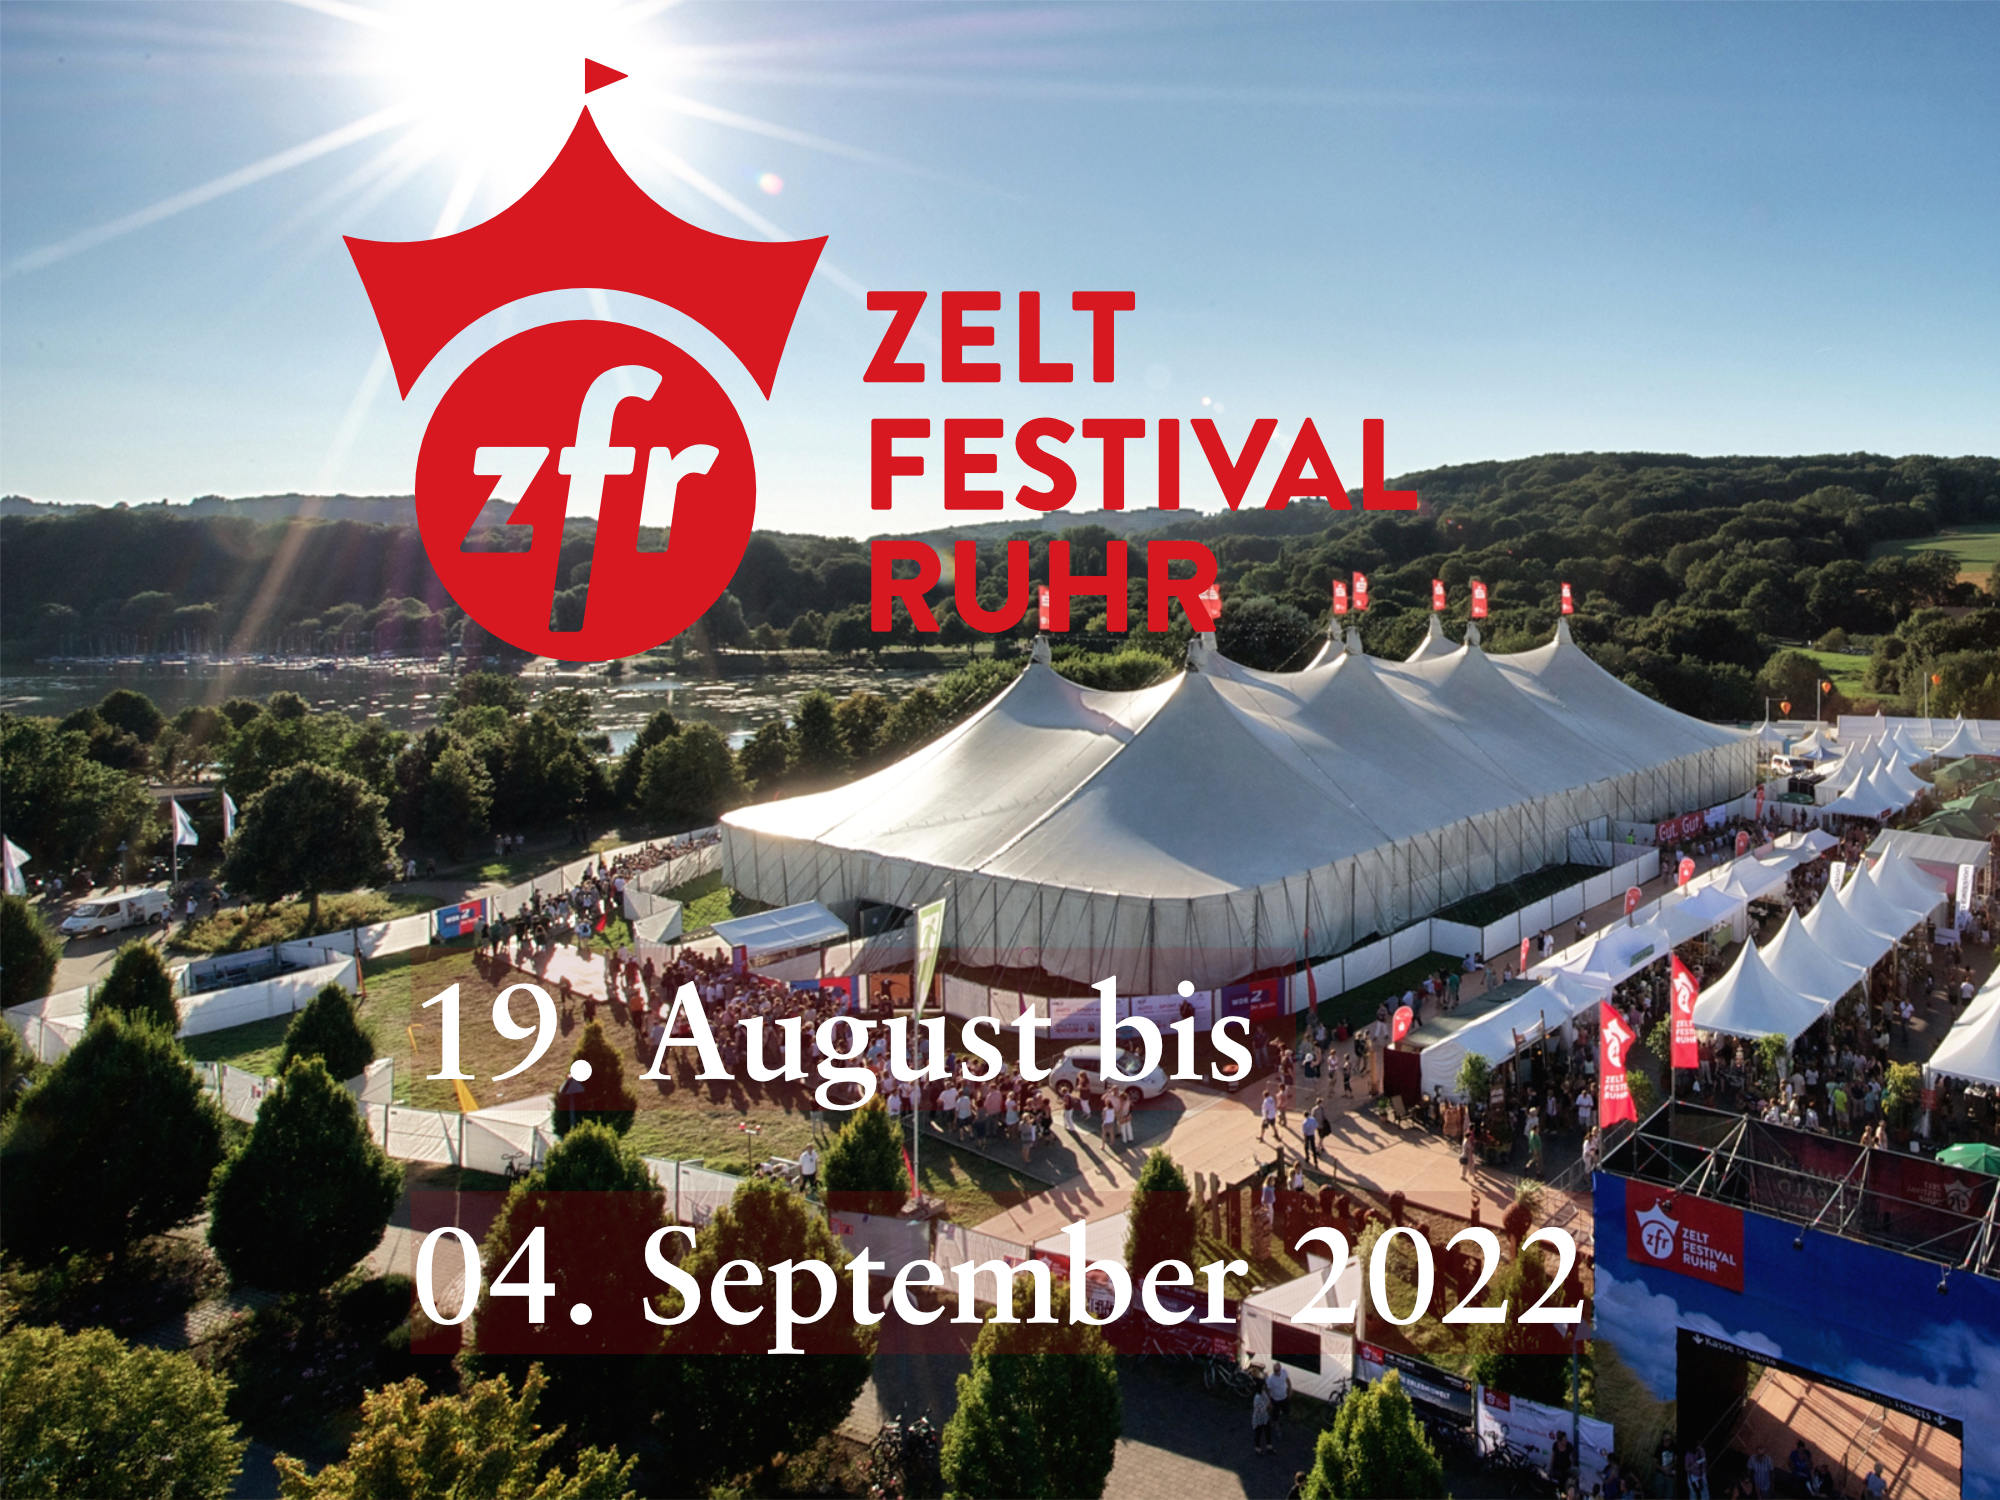 newsbild für das zeltfestival ruhr 2022 vom 19. August bis 4. September, Foto Ingo Otto